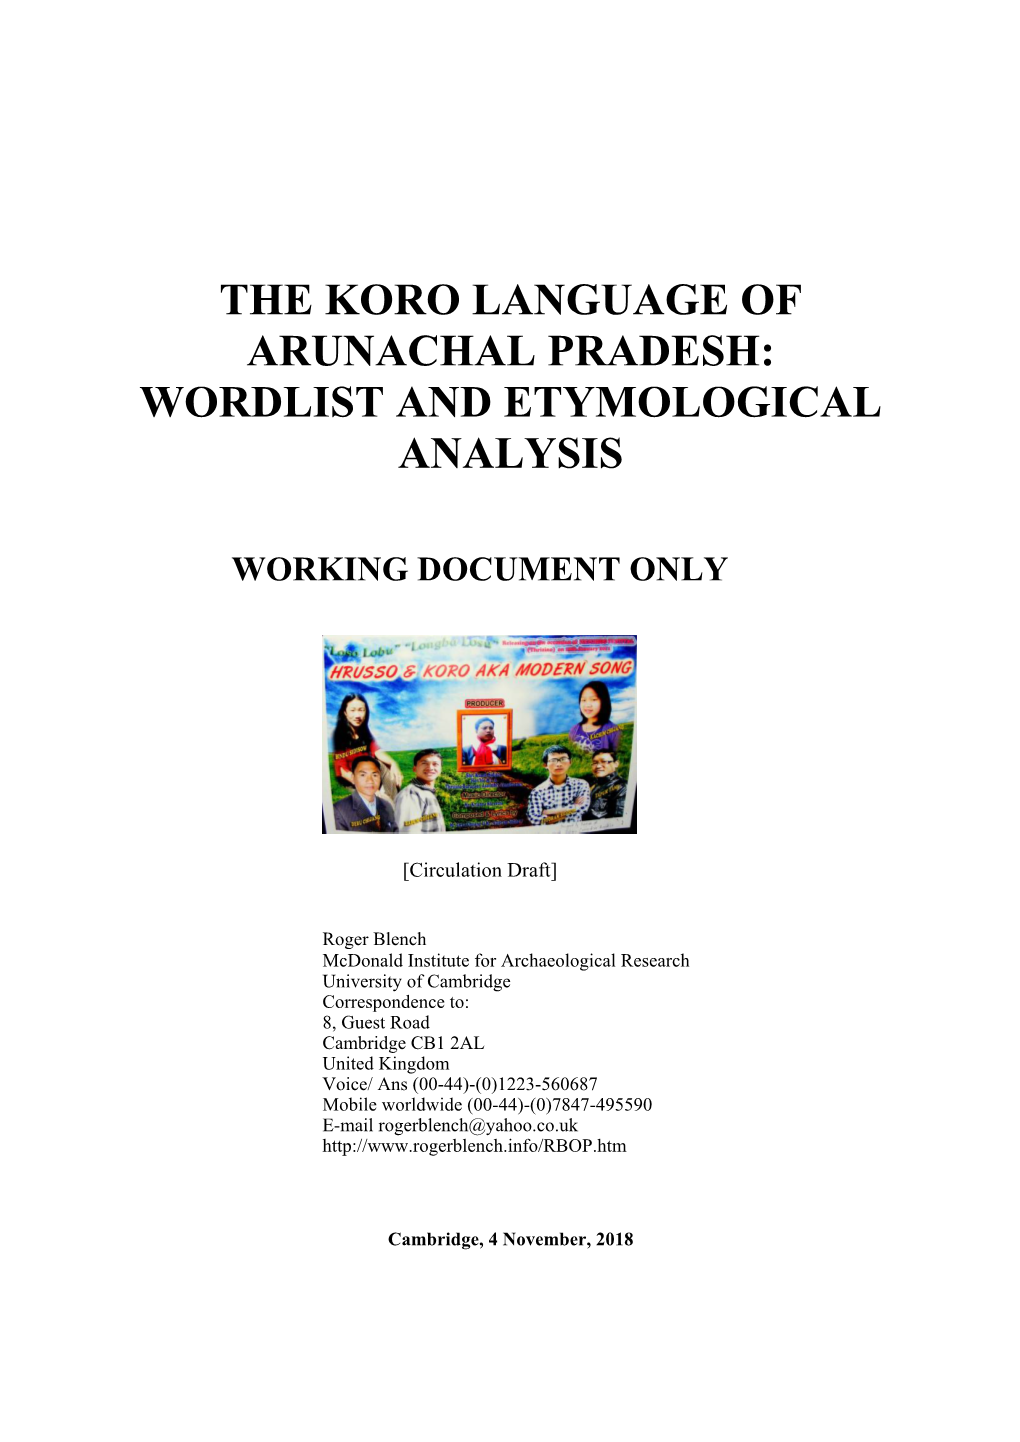 The Koro Language of Arunachal Pradesh: Wordlist and Etymological Analysis